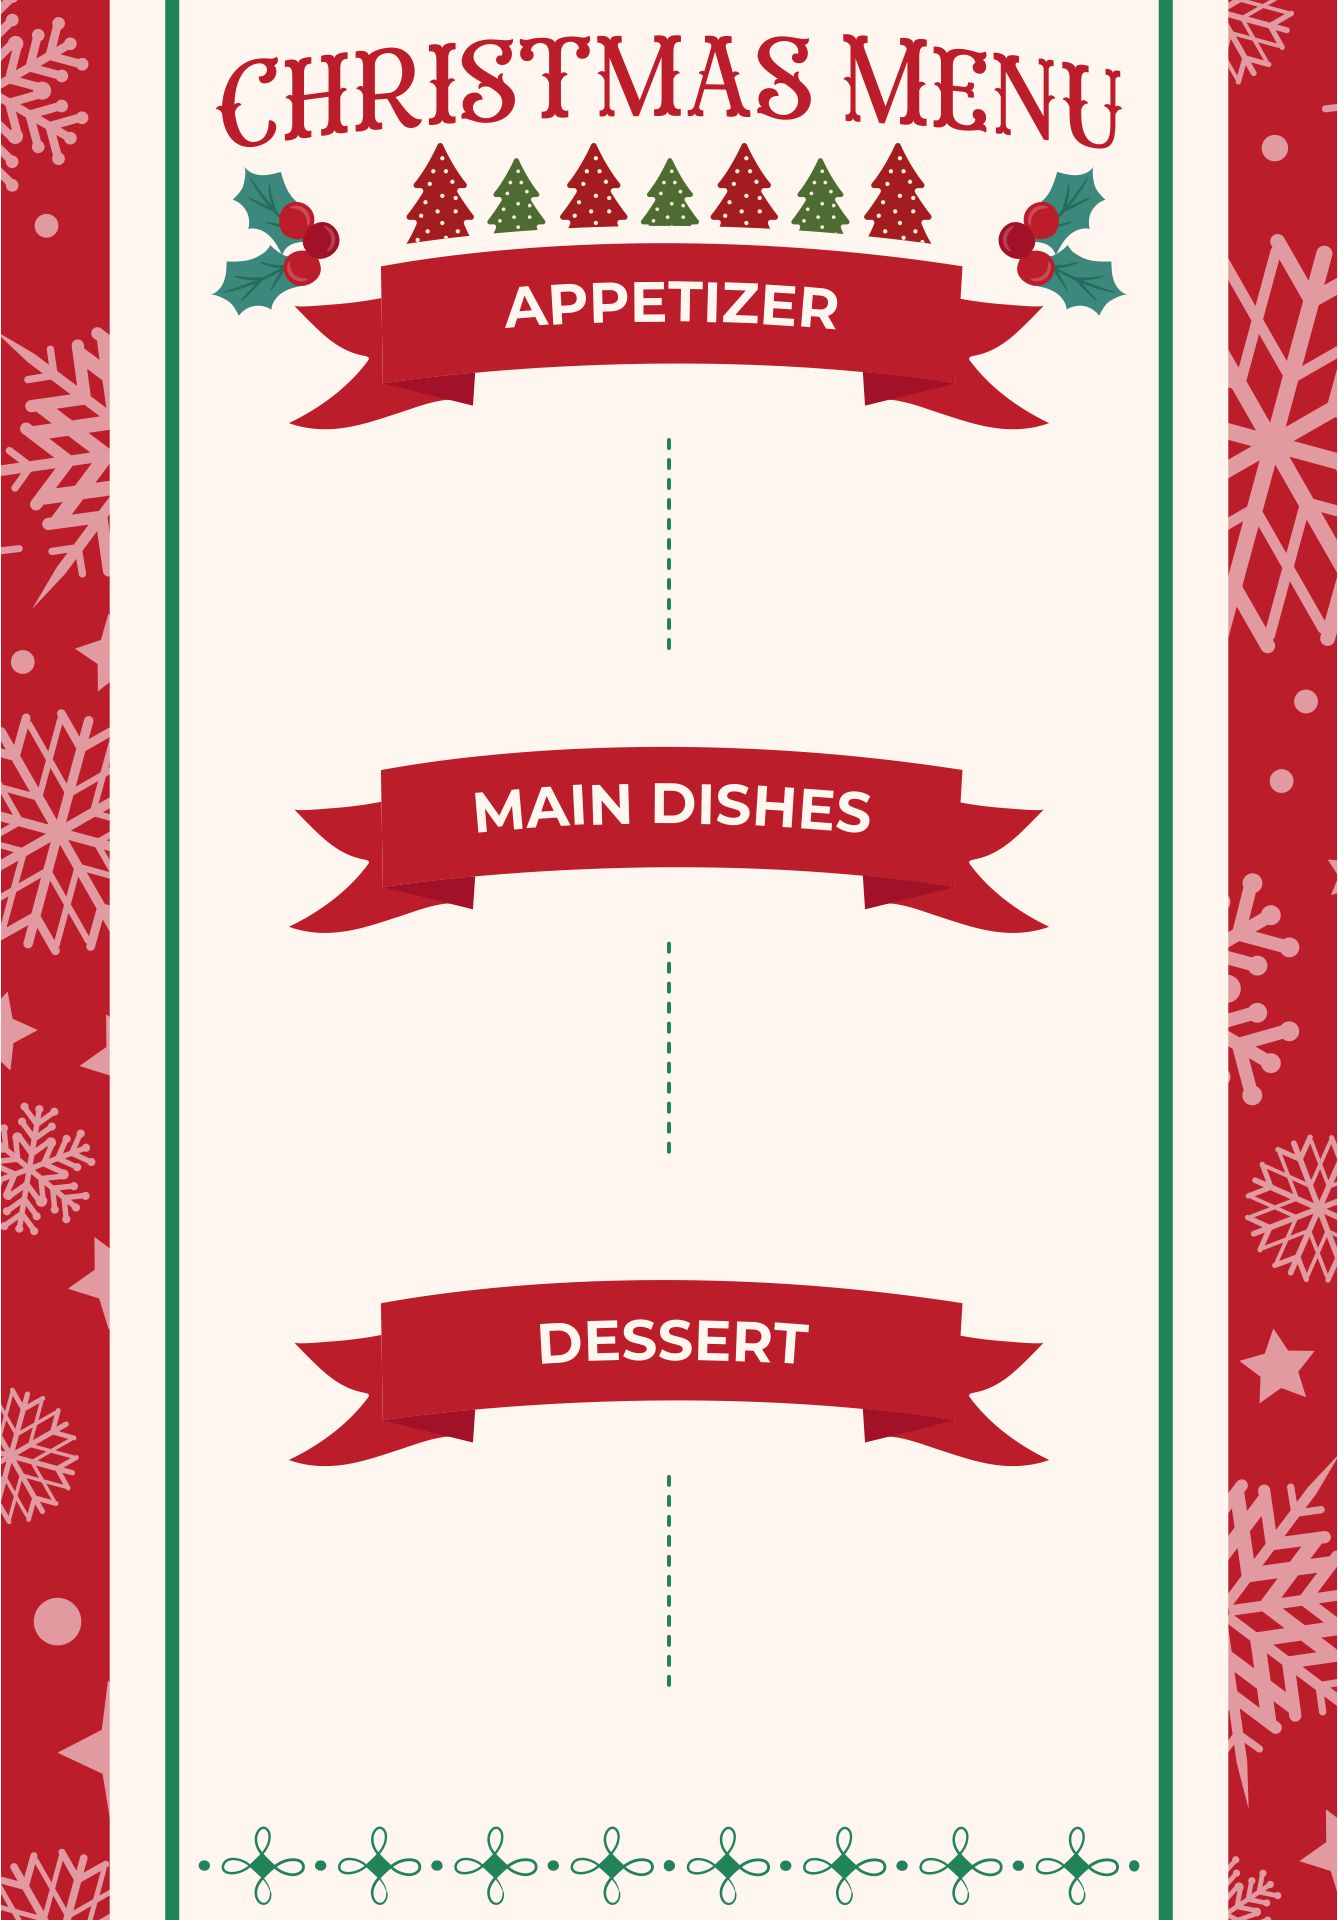 5 Best Images of Christmas Dinner Menu Printable - Free Printable